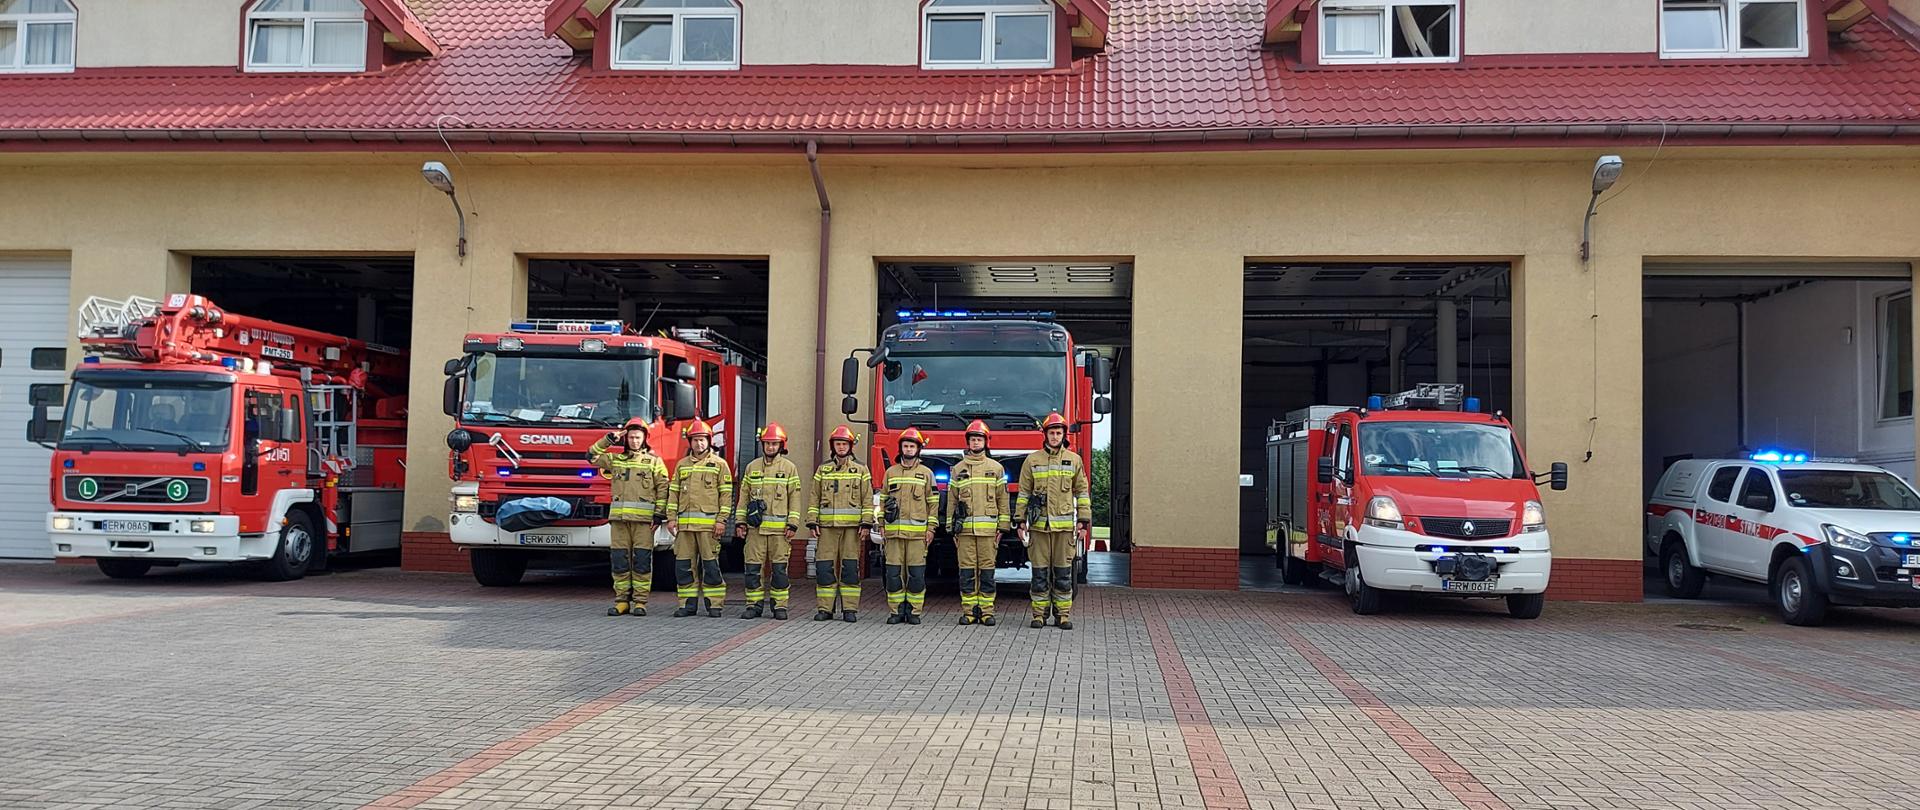 Zdjęcie przedstawia 5 otwartych drzwi garażowych straży pożarnej, w których soją samochody strażackie, a przed nimi w jednym szeregu ustawionych jest 7 strażaków, ubranych w piaskowe stroje bojowe, z hełmami na głowie.